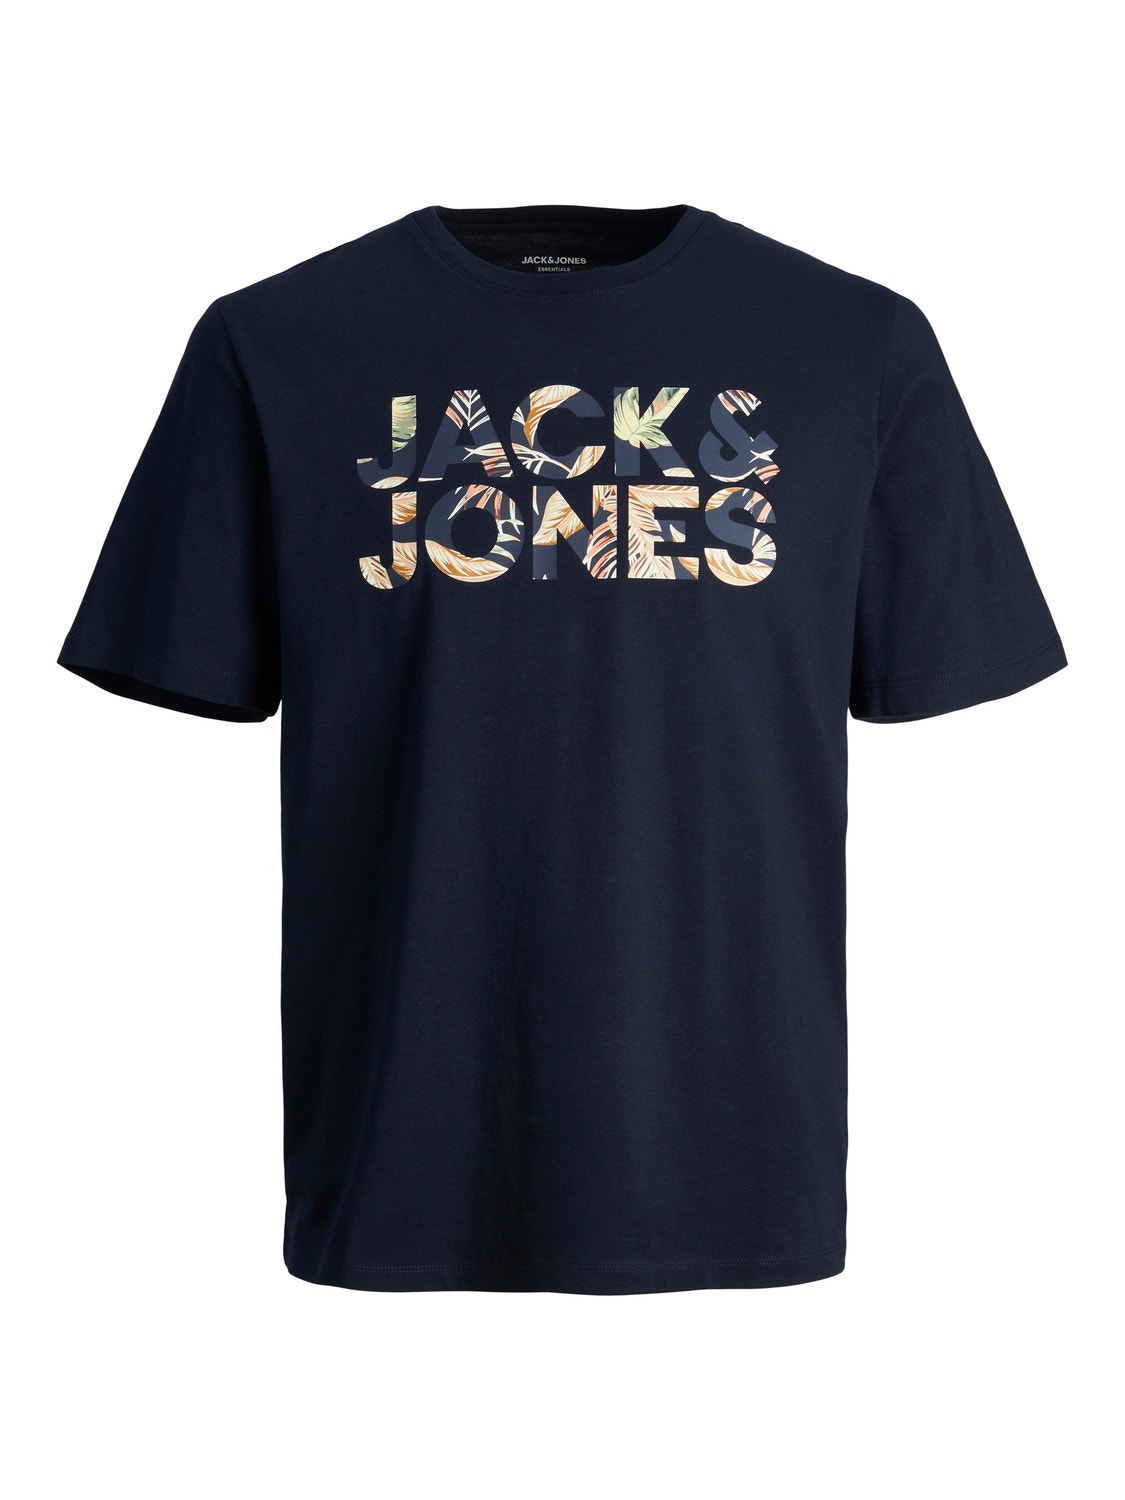 Jack & Jones Logo O-hals T-skjorte -Navy Blazer - 12250683